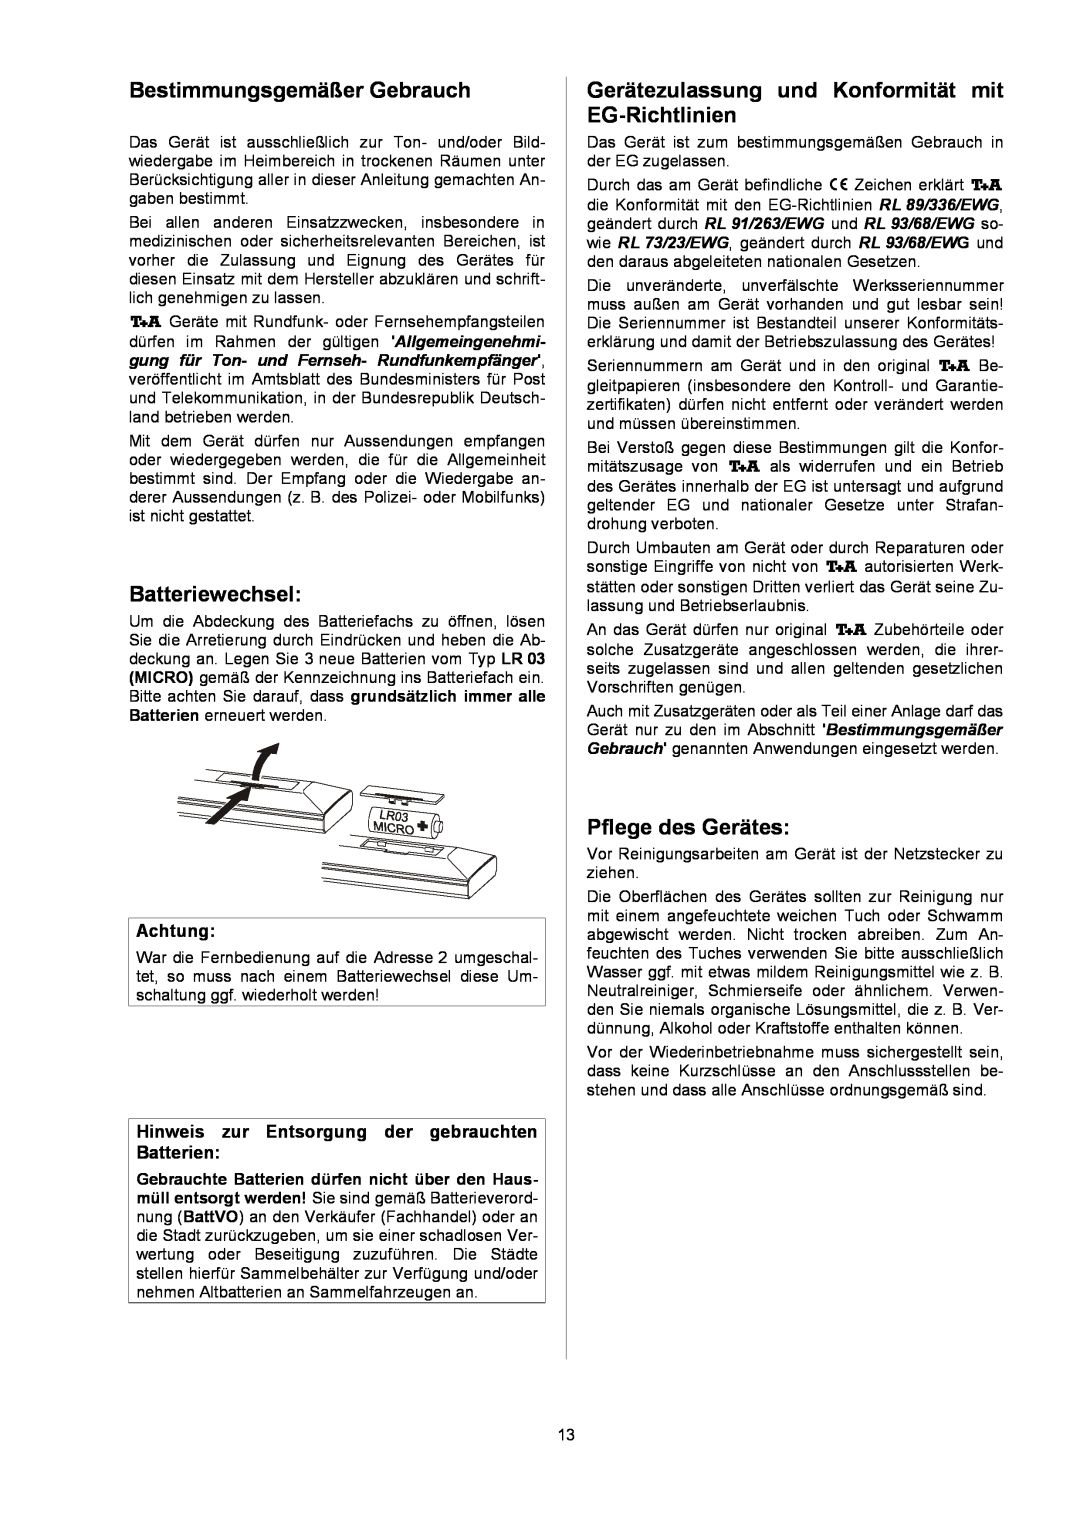 T+A Elektroakustik P 10 BestimmungsgemäßerGebrauch, Batteriewechsel, Gerätezulassung und Konformität mit EGRichtlinien 